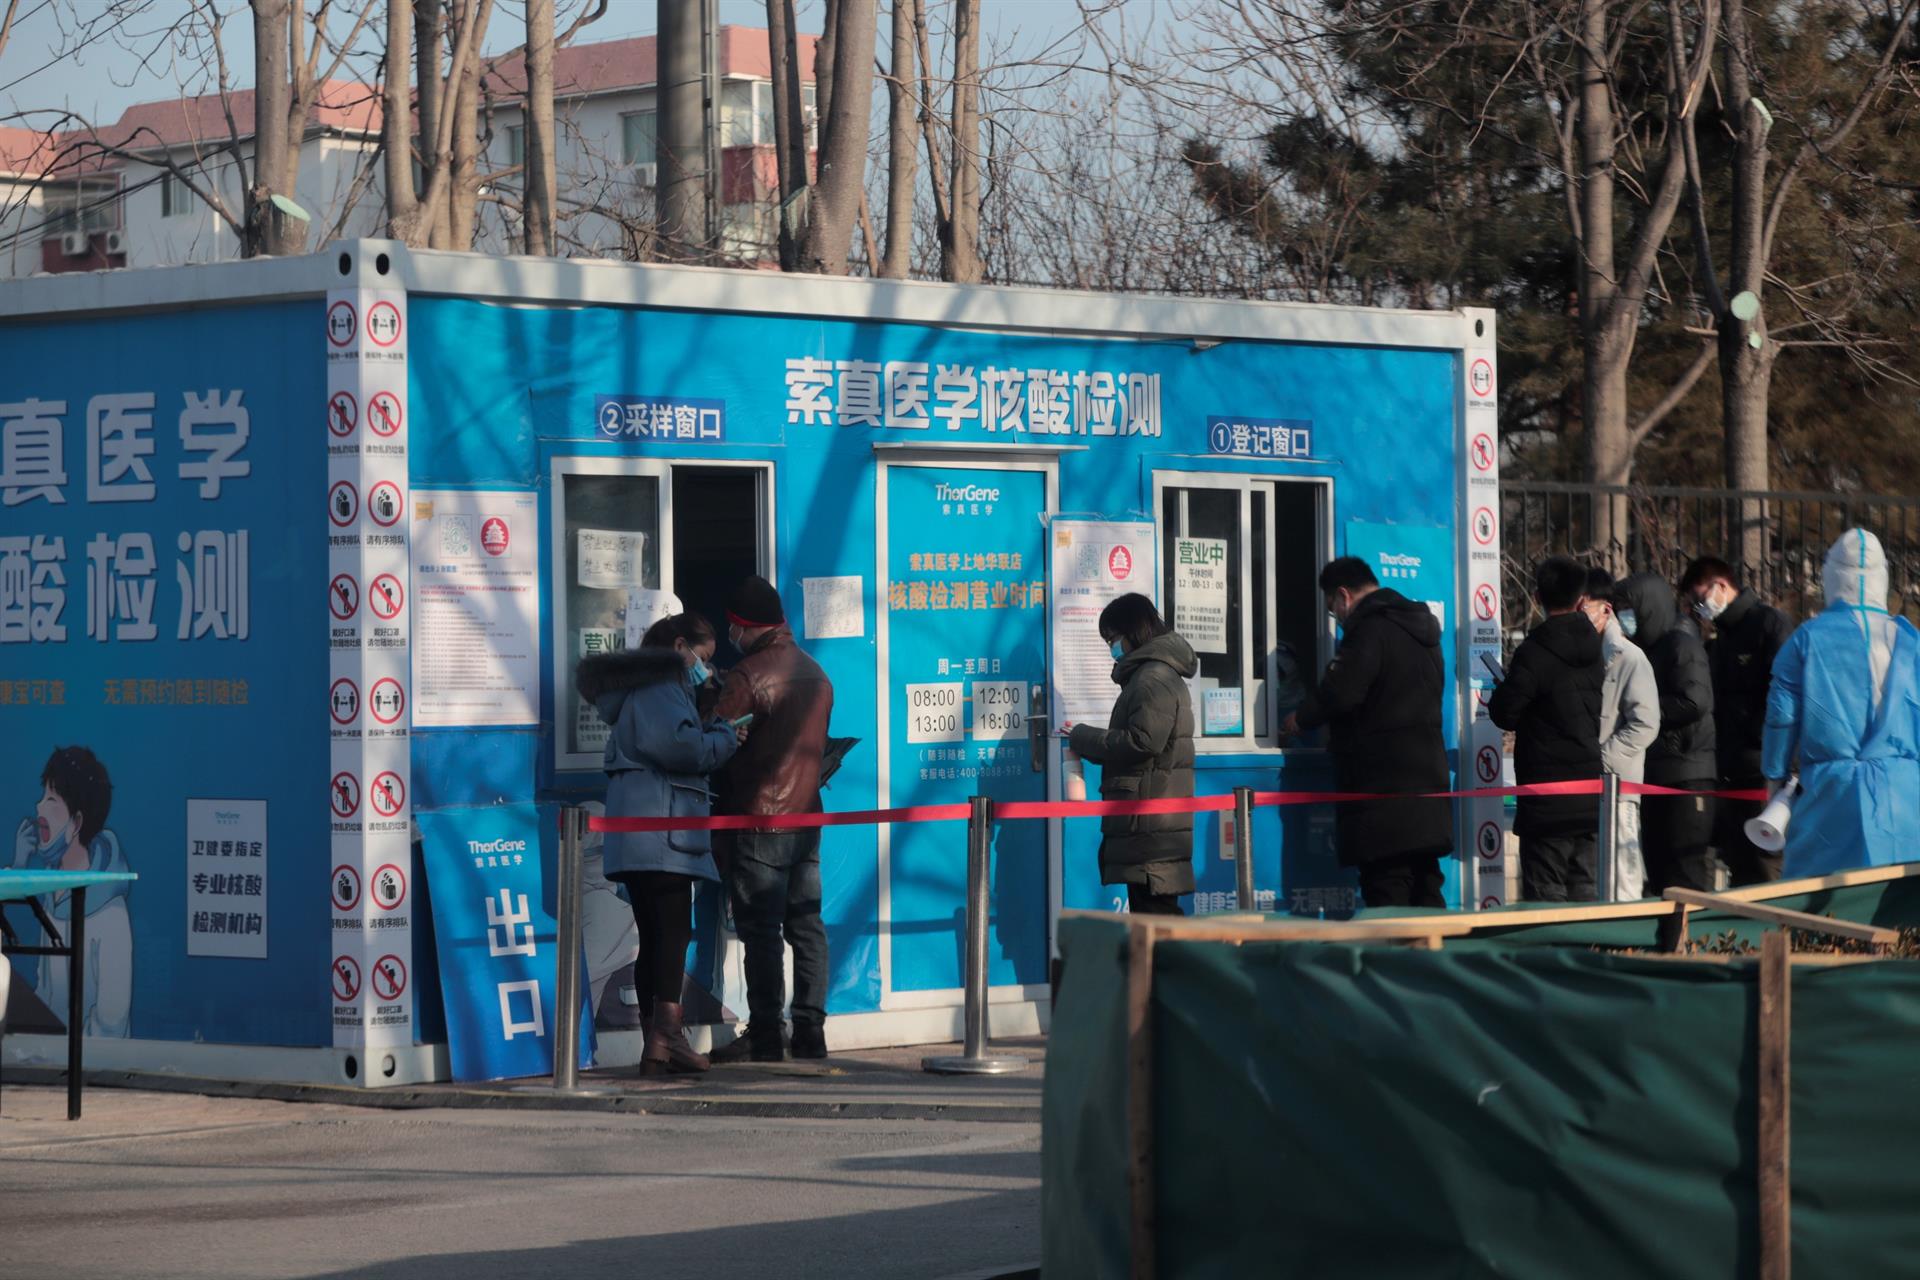 Ómicron, Año Nuevo chino y Juegos Olímpicos: un rompecabezas para Pekín